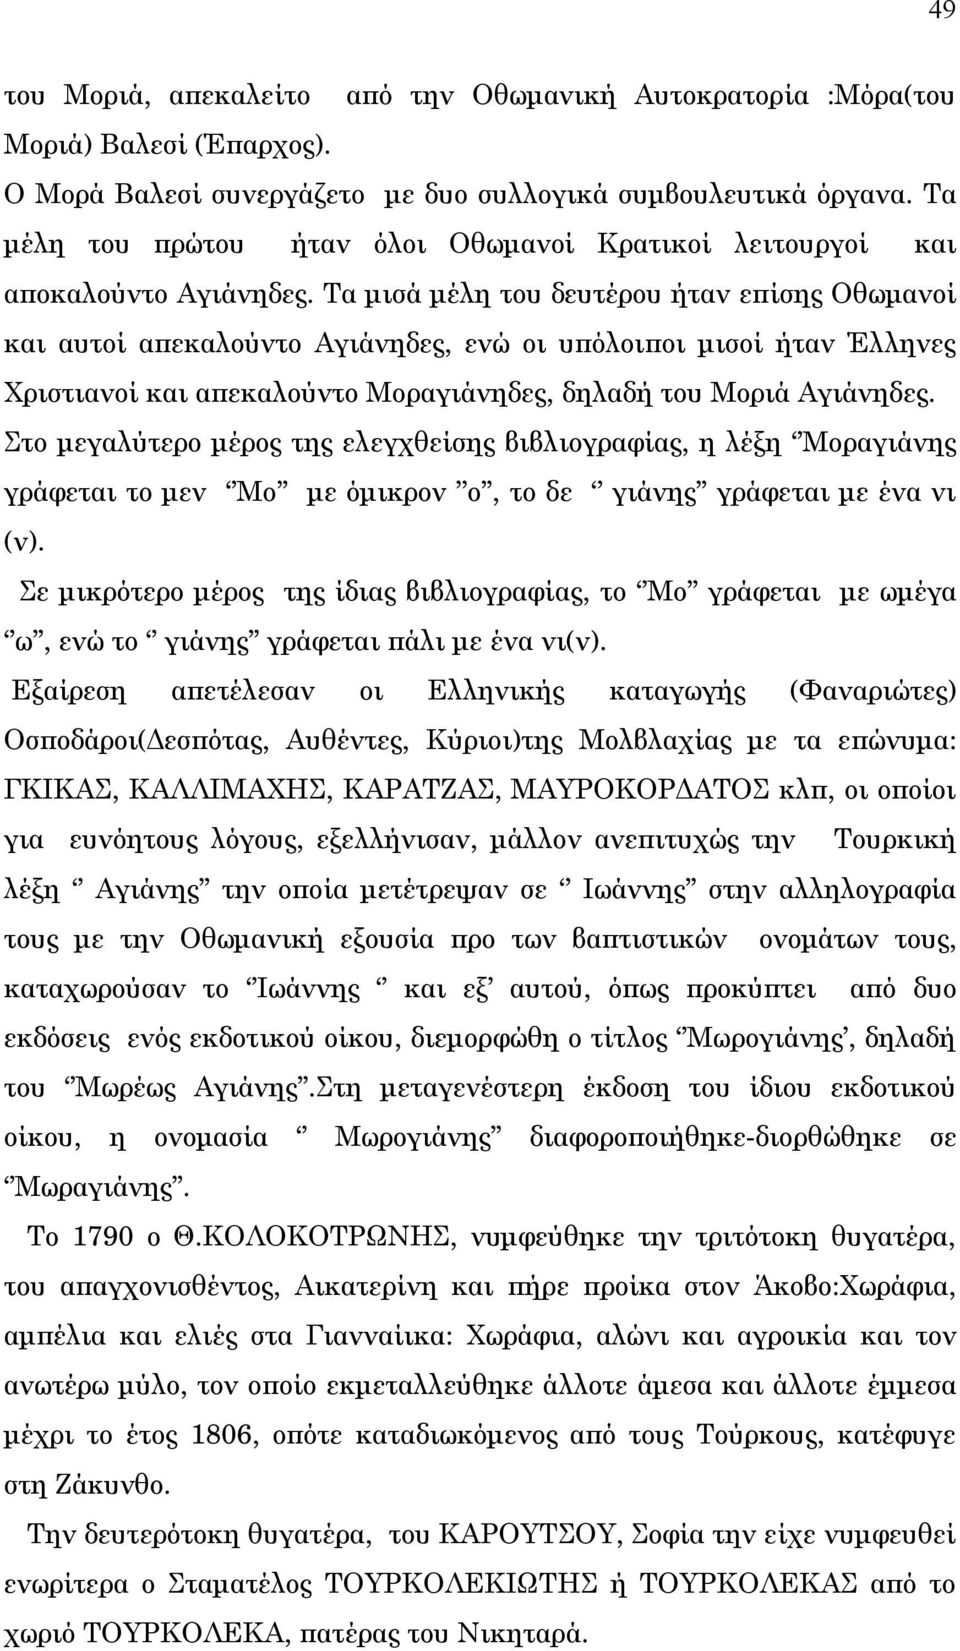 Τα μισά μέλη του δευτέρου ήταν επίσης Οθωμανοί και αυτοί απεκαλούντο Αγιάνηδες, ενώ οι υπόλοιποι μισοί ήταν Έλληνες Χριστιανοί και απεκαλούντο Μοραγιάνηδες, δηλαδή του Μοριά Αγιάνηδες.